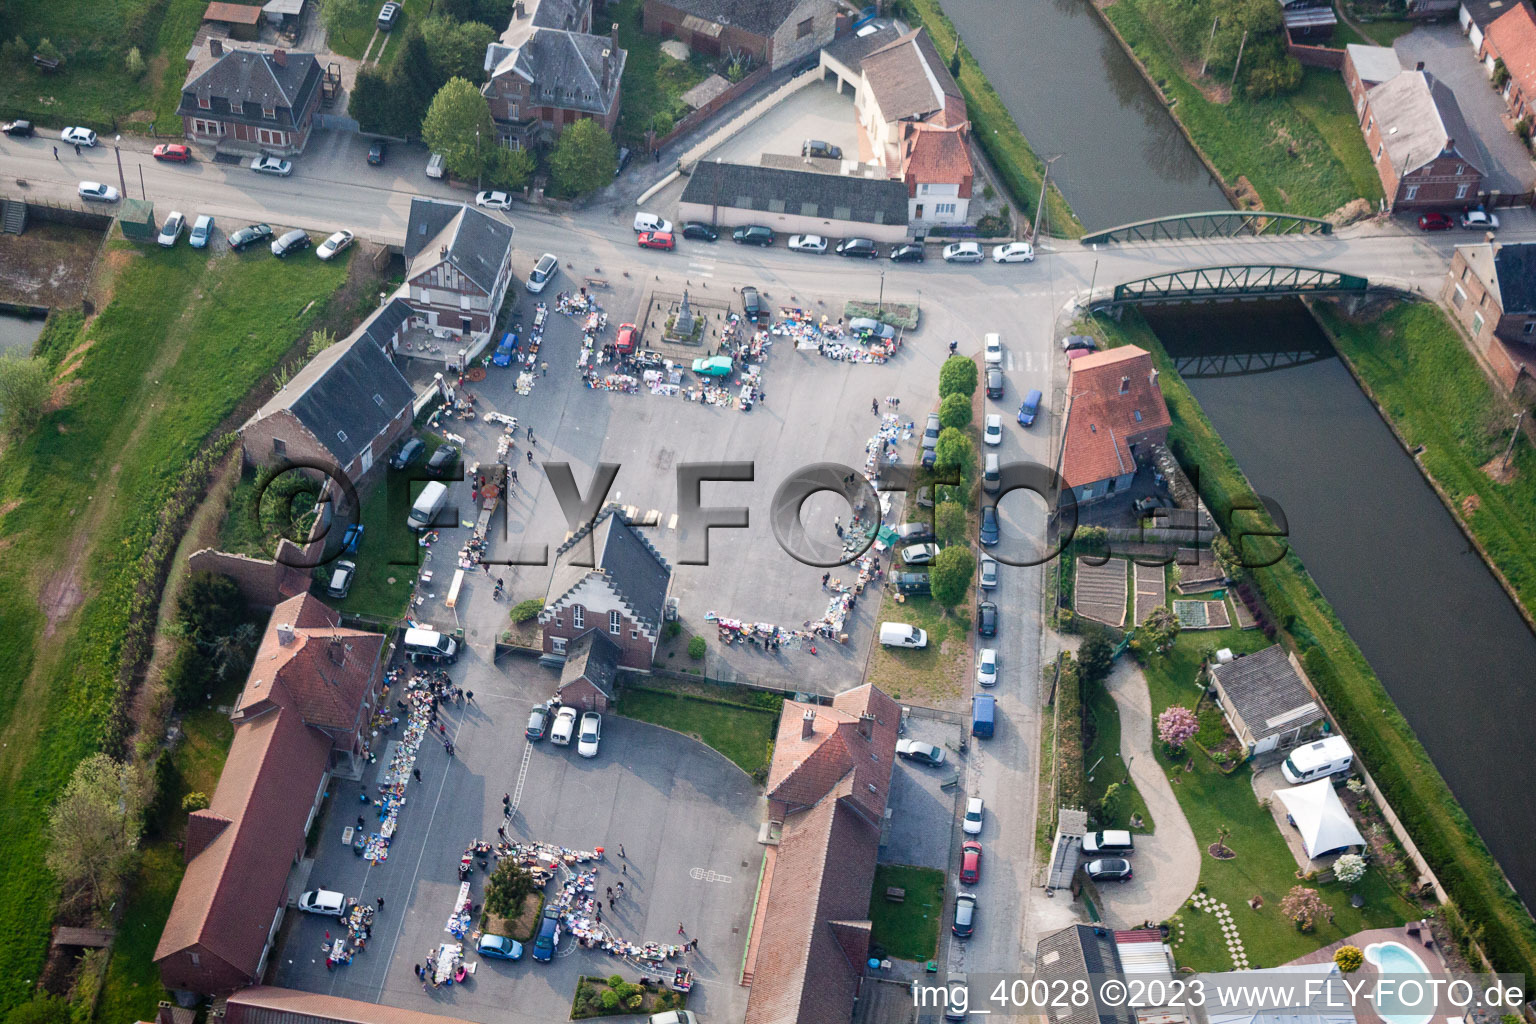 Vendhuile im Bundesland Aisne, Frankreich von oben gesehen